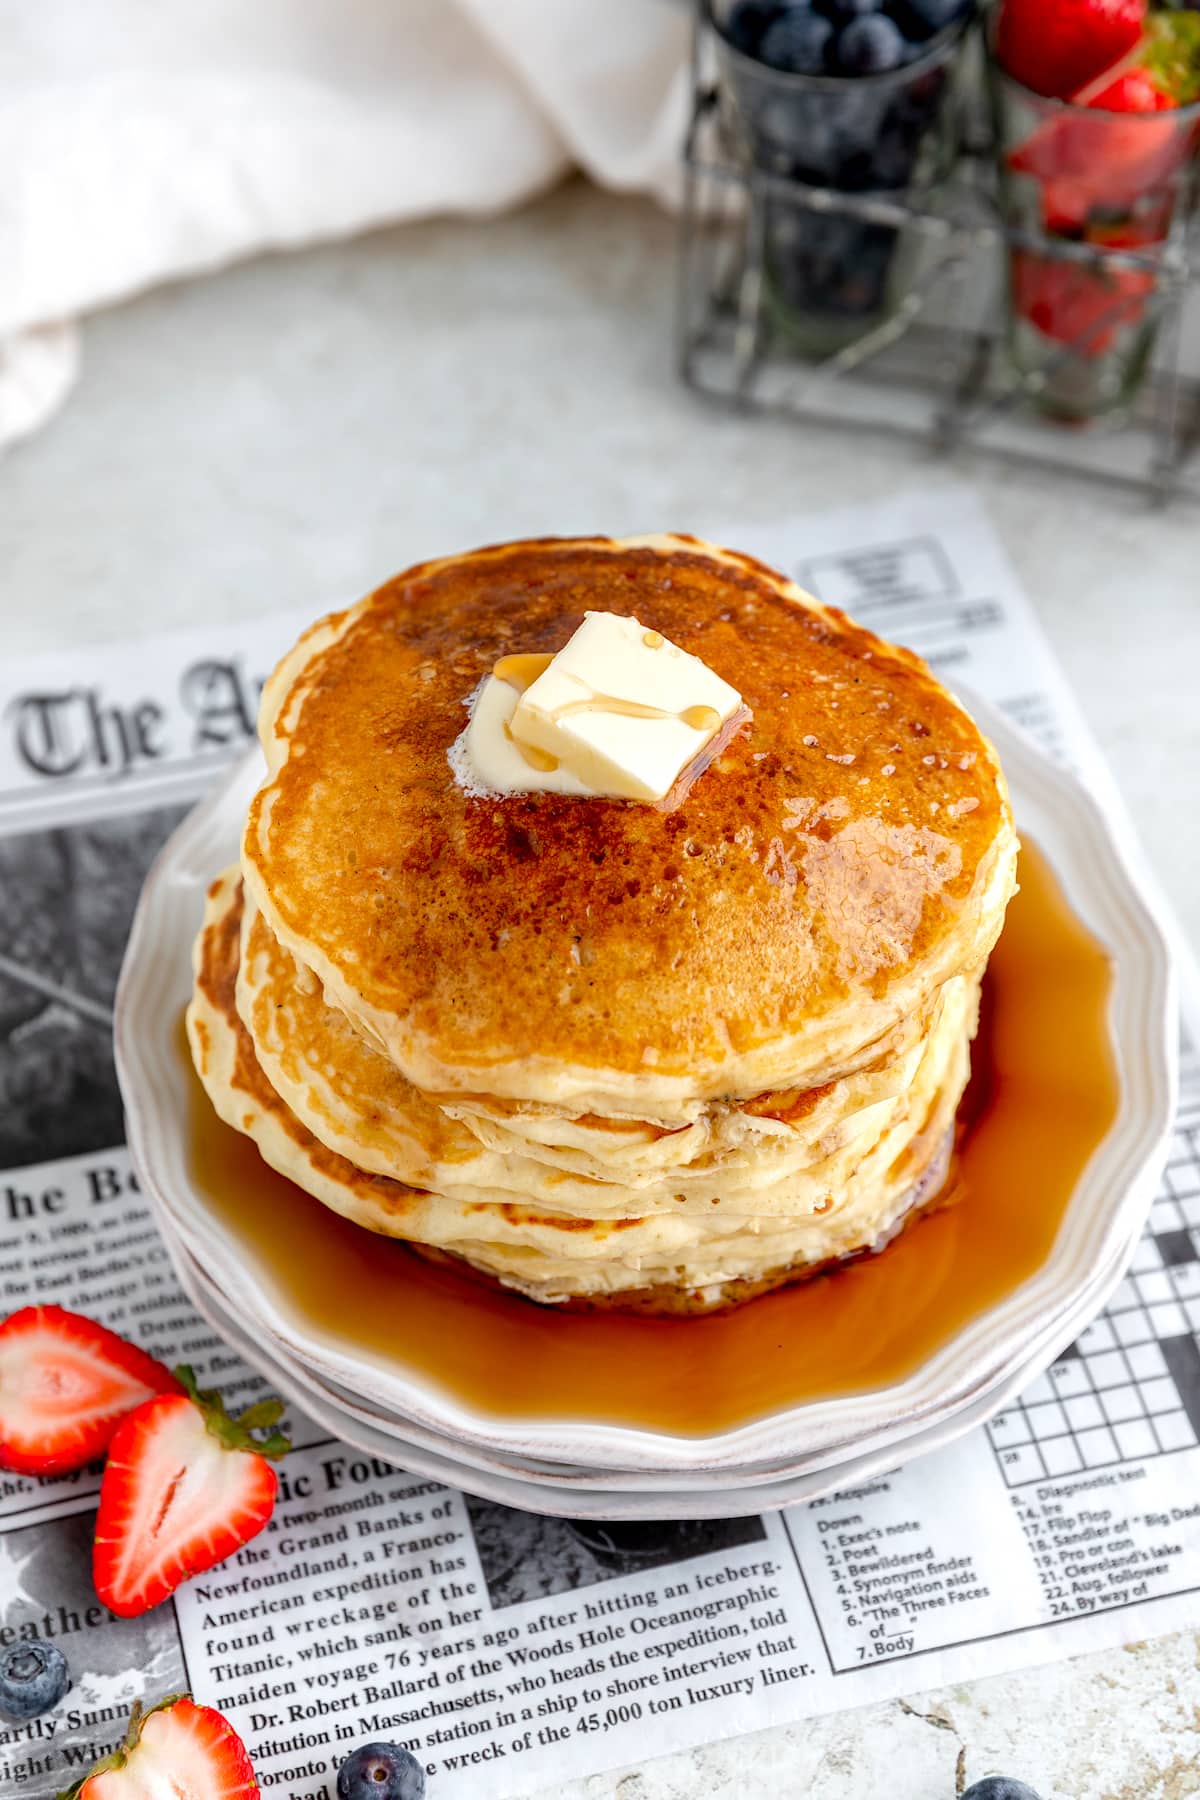 https://www.twopeasandtheirpod.com/wp-content/uploads/2021/06/buttermilk-pancakes-9.jpg